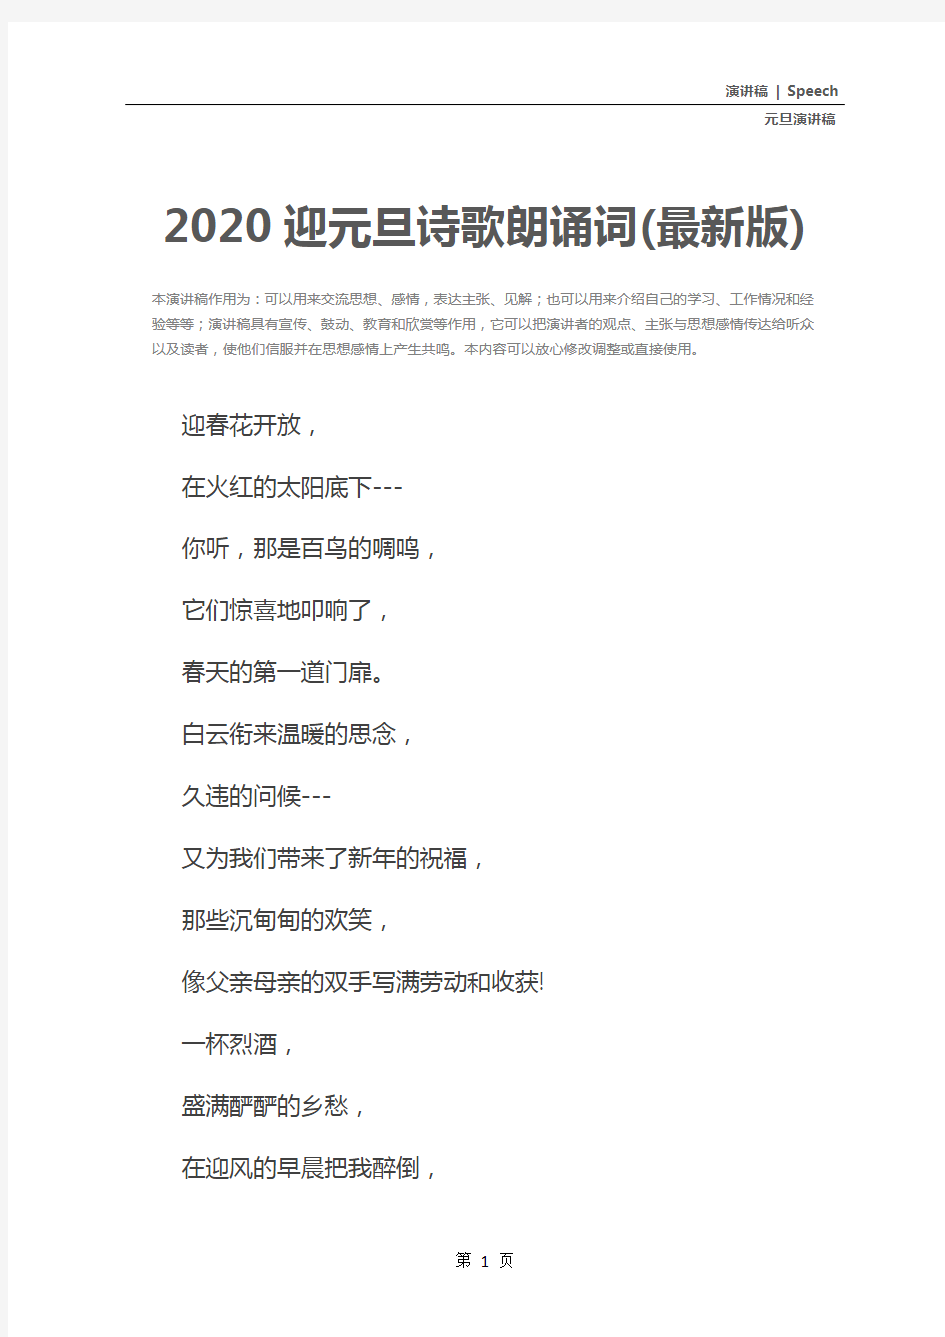 2020迎元旦诗歌朗诵词(最新版)